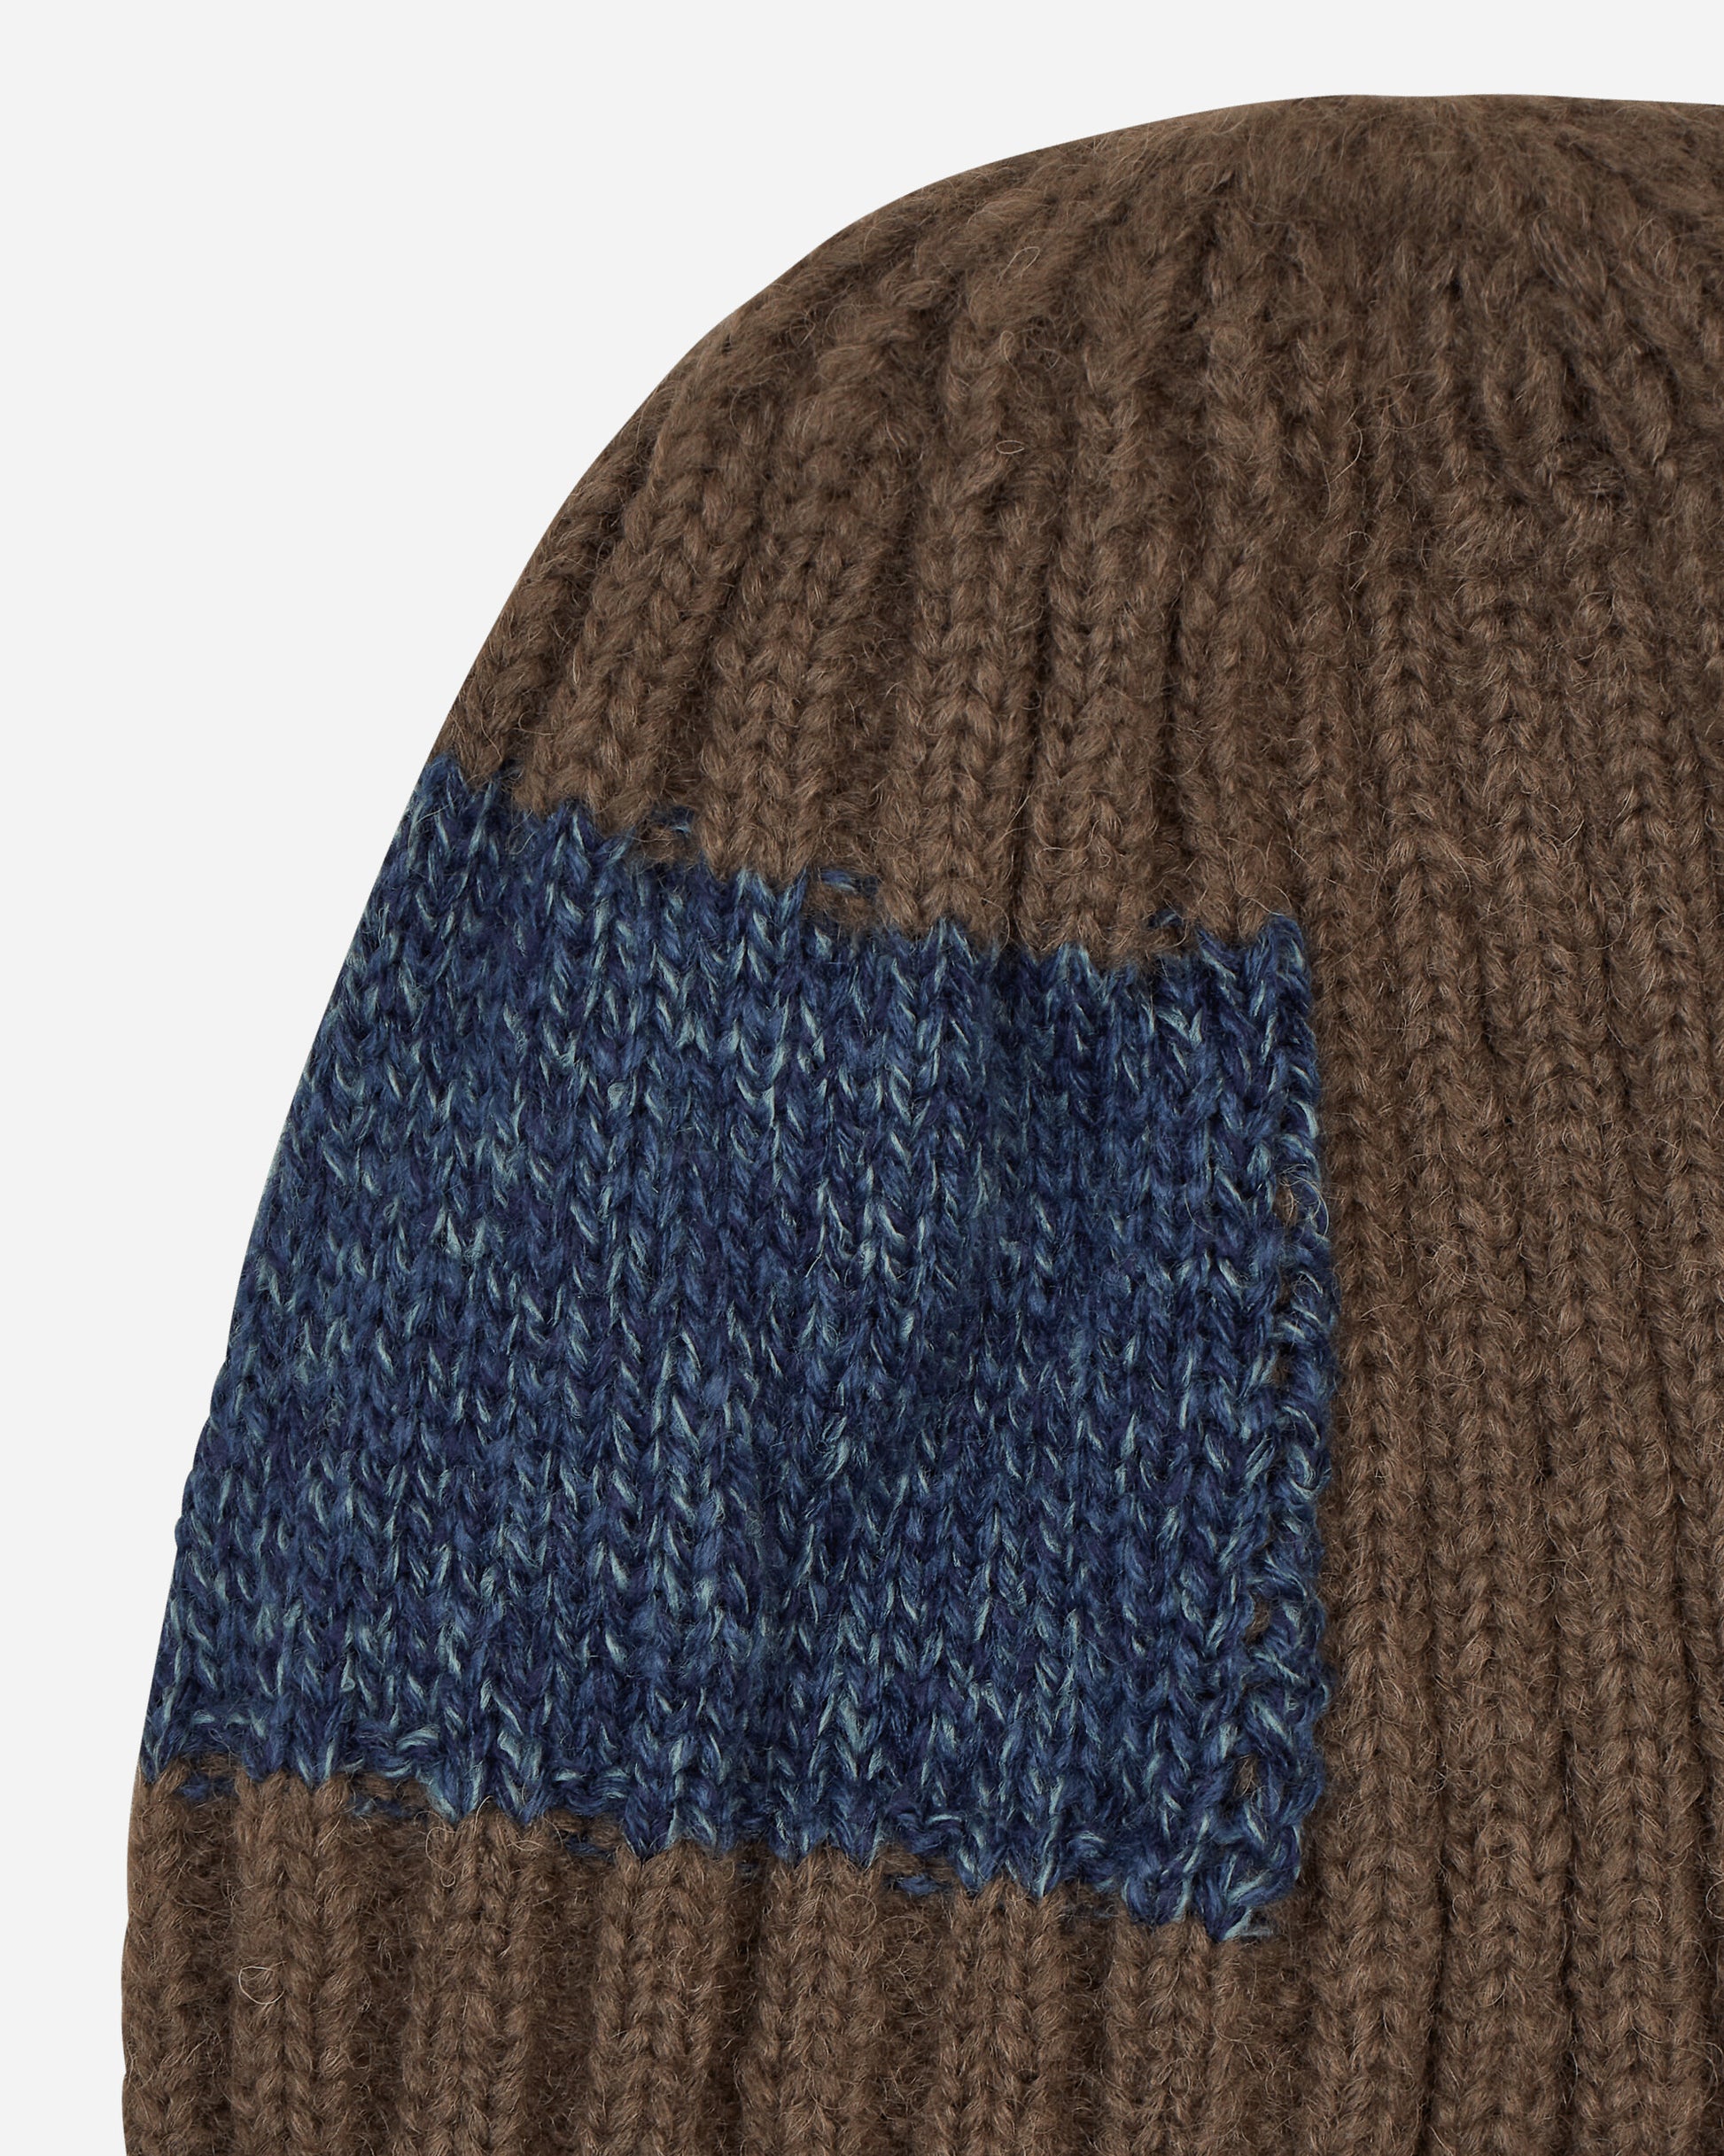 KAPITAL 5G Wool Tugihagi Knit Cap Gray Hats Beanies EK-1510 2